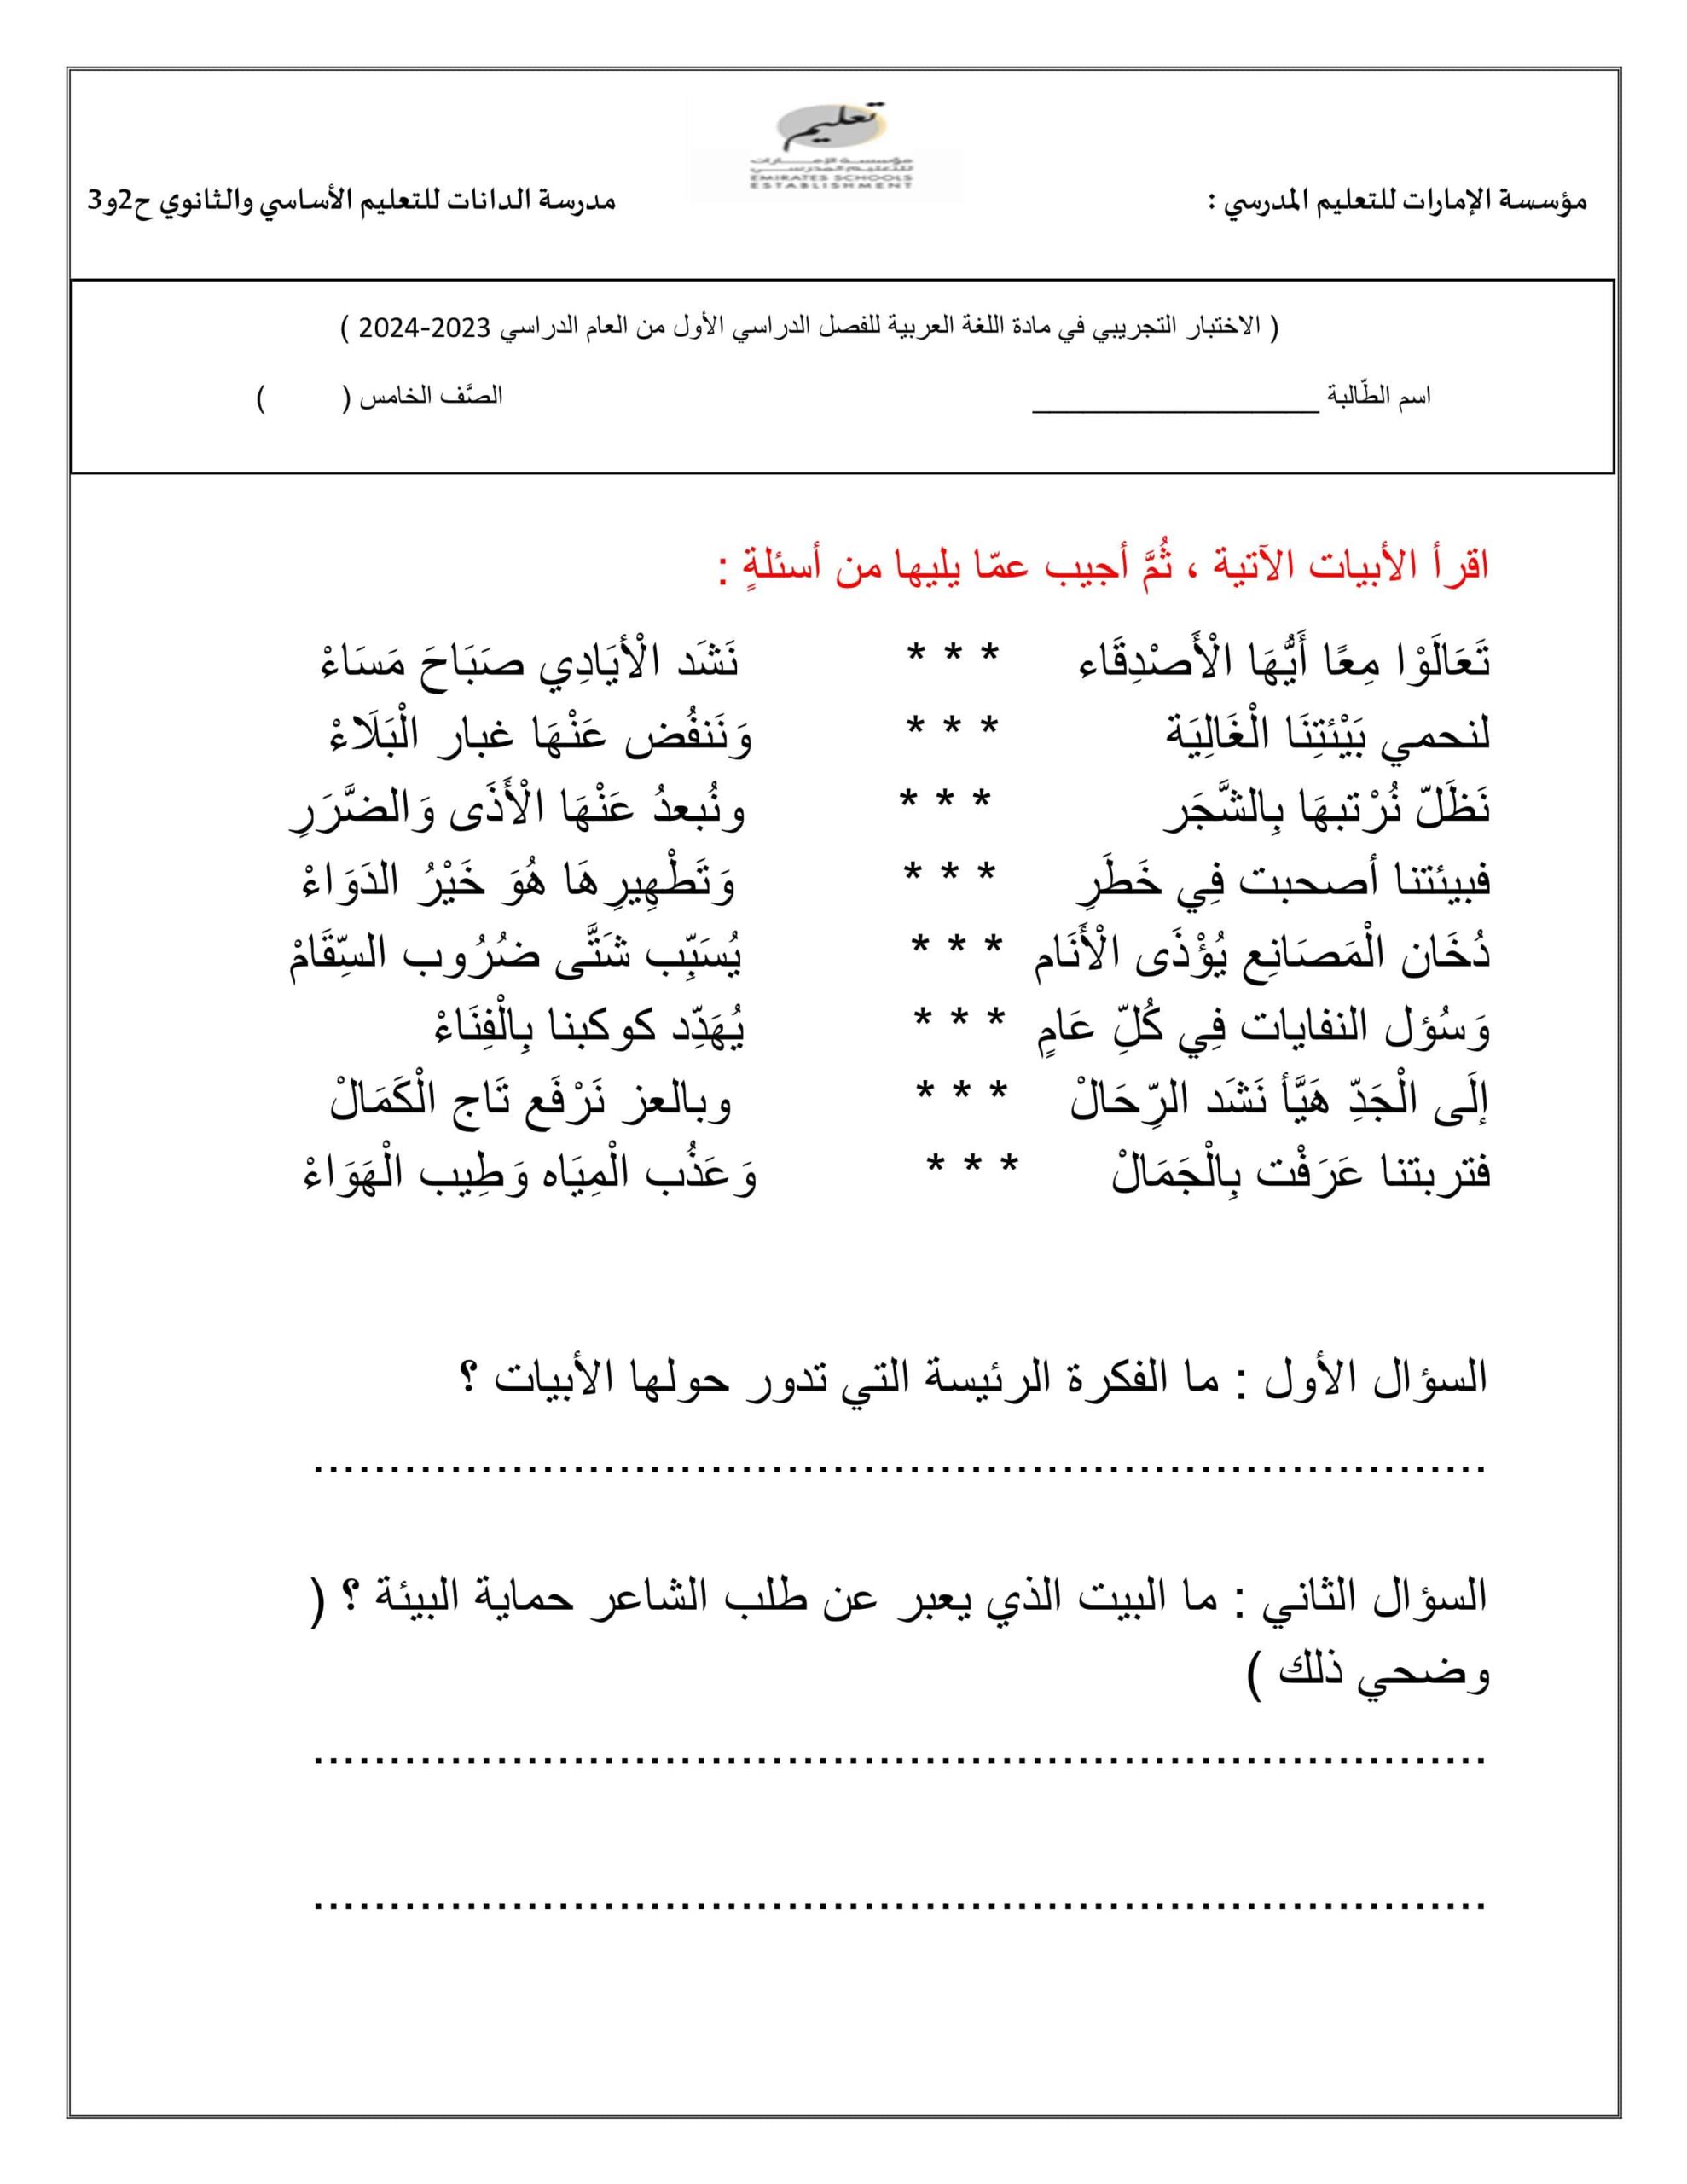 الاختبار التجريبي اللغة العربية الصف الخامس 